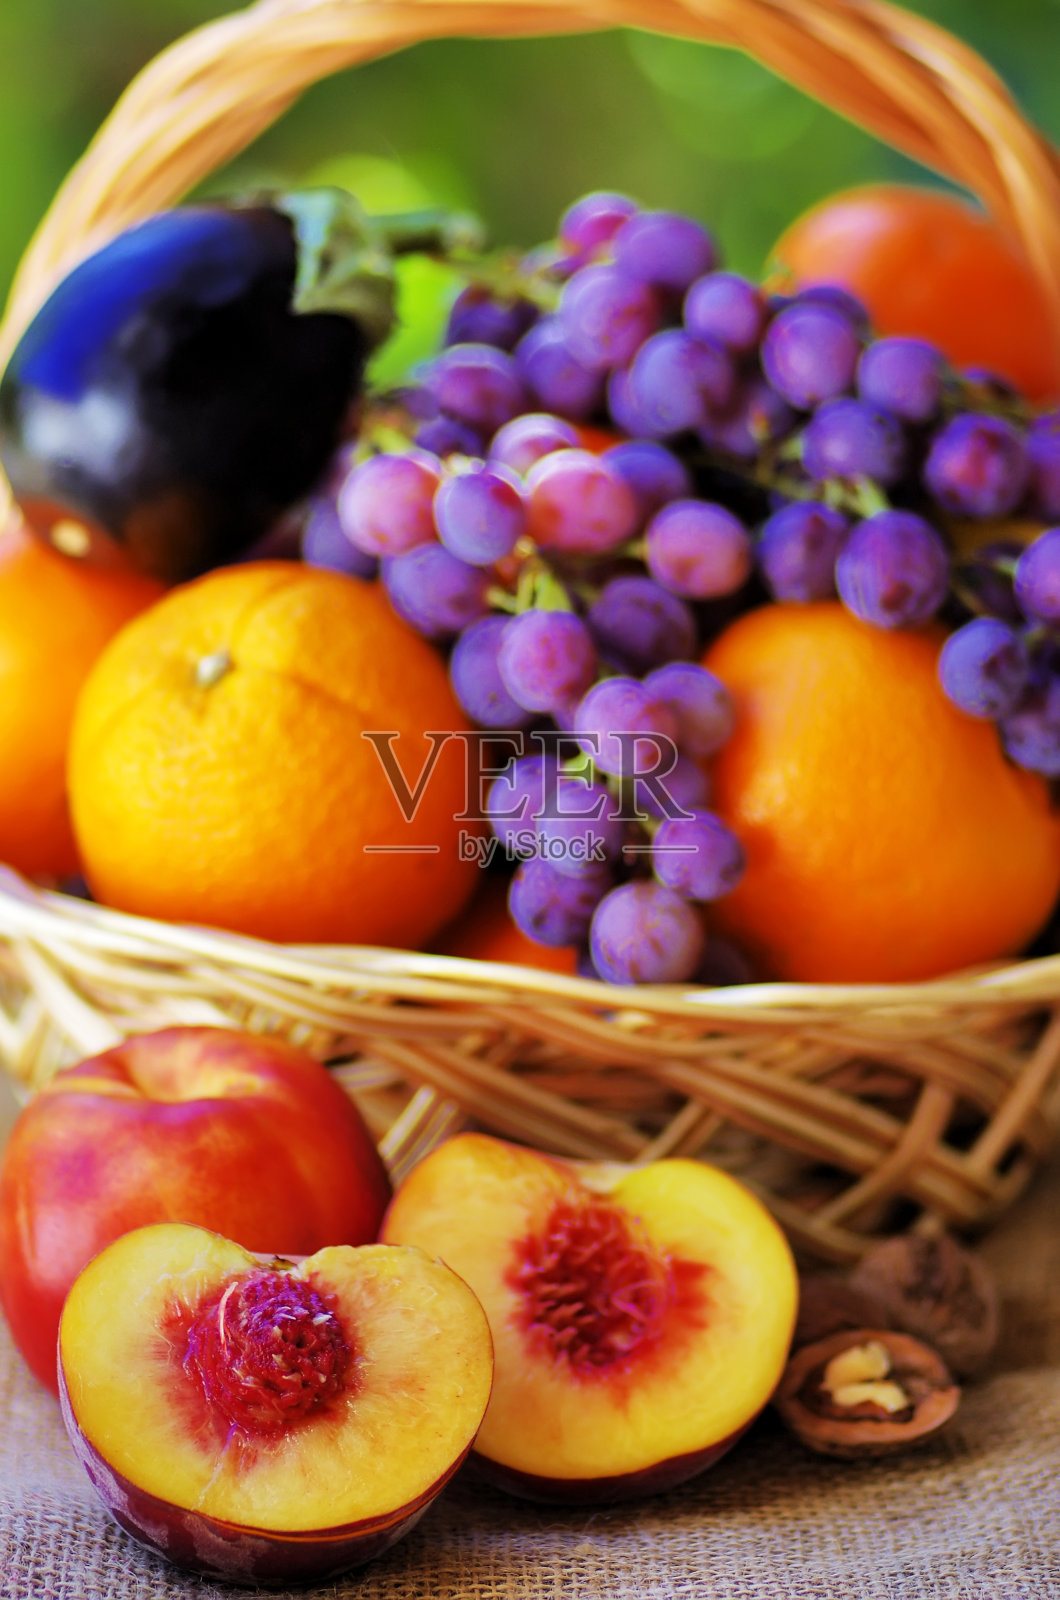 满满一篮子柑橘类水果和桃子照片摄影图片